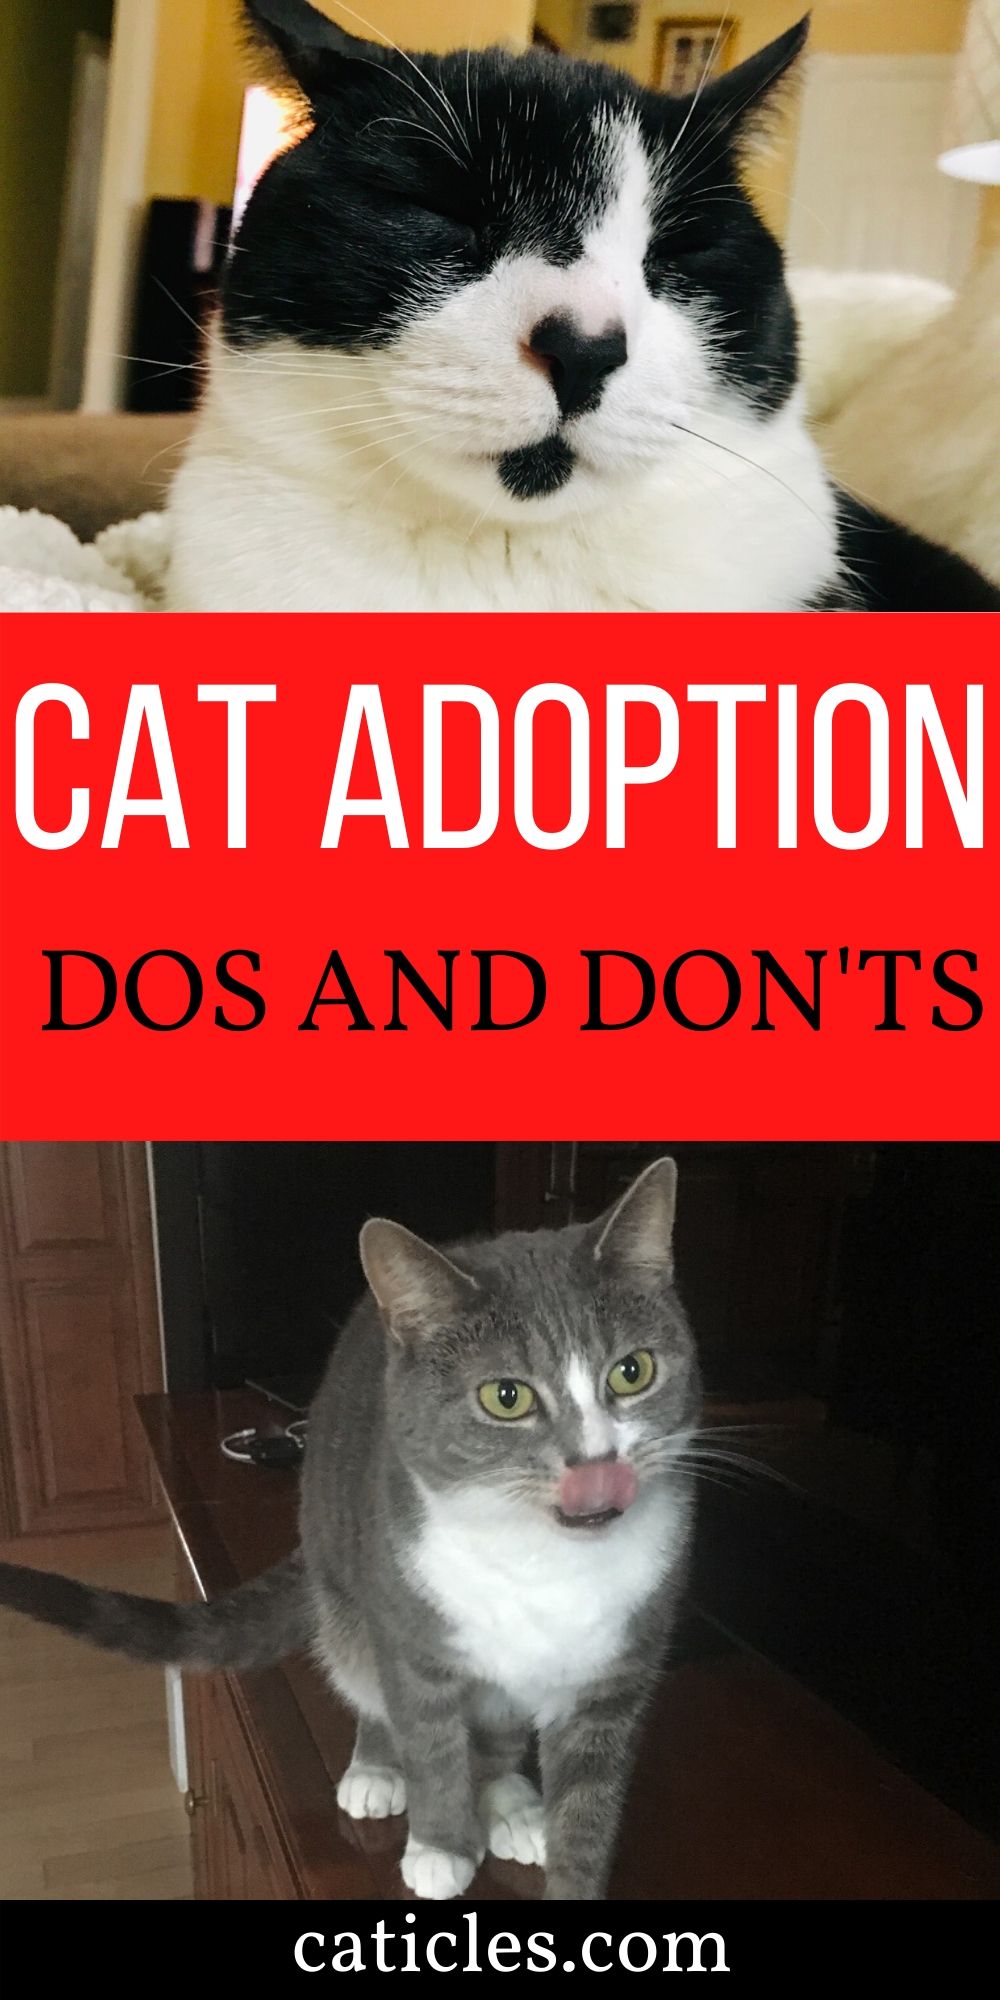 cat adoption dos and don'ts pin image